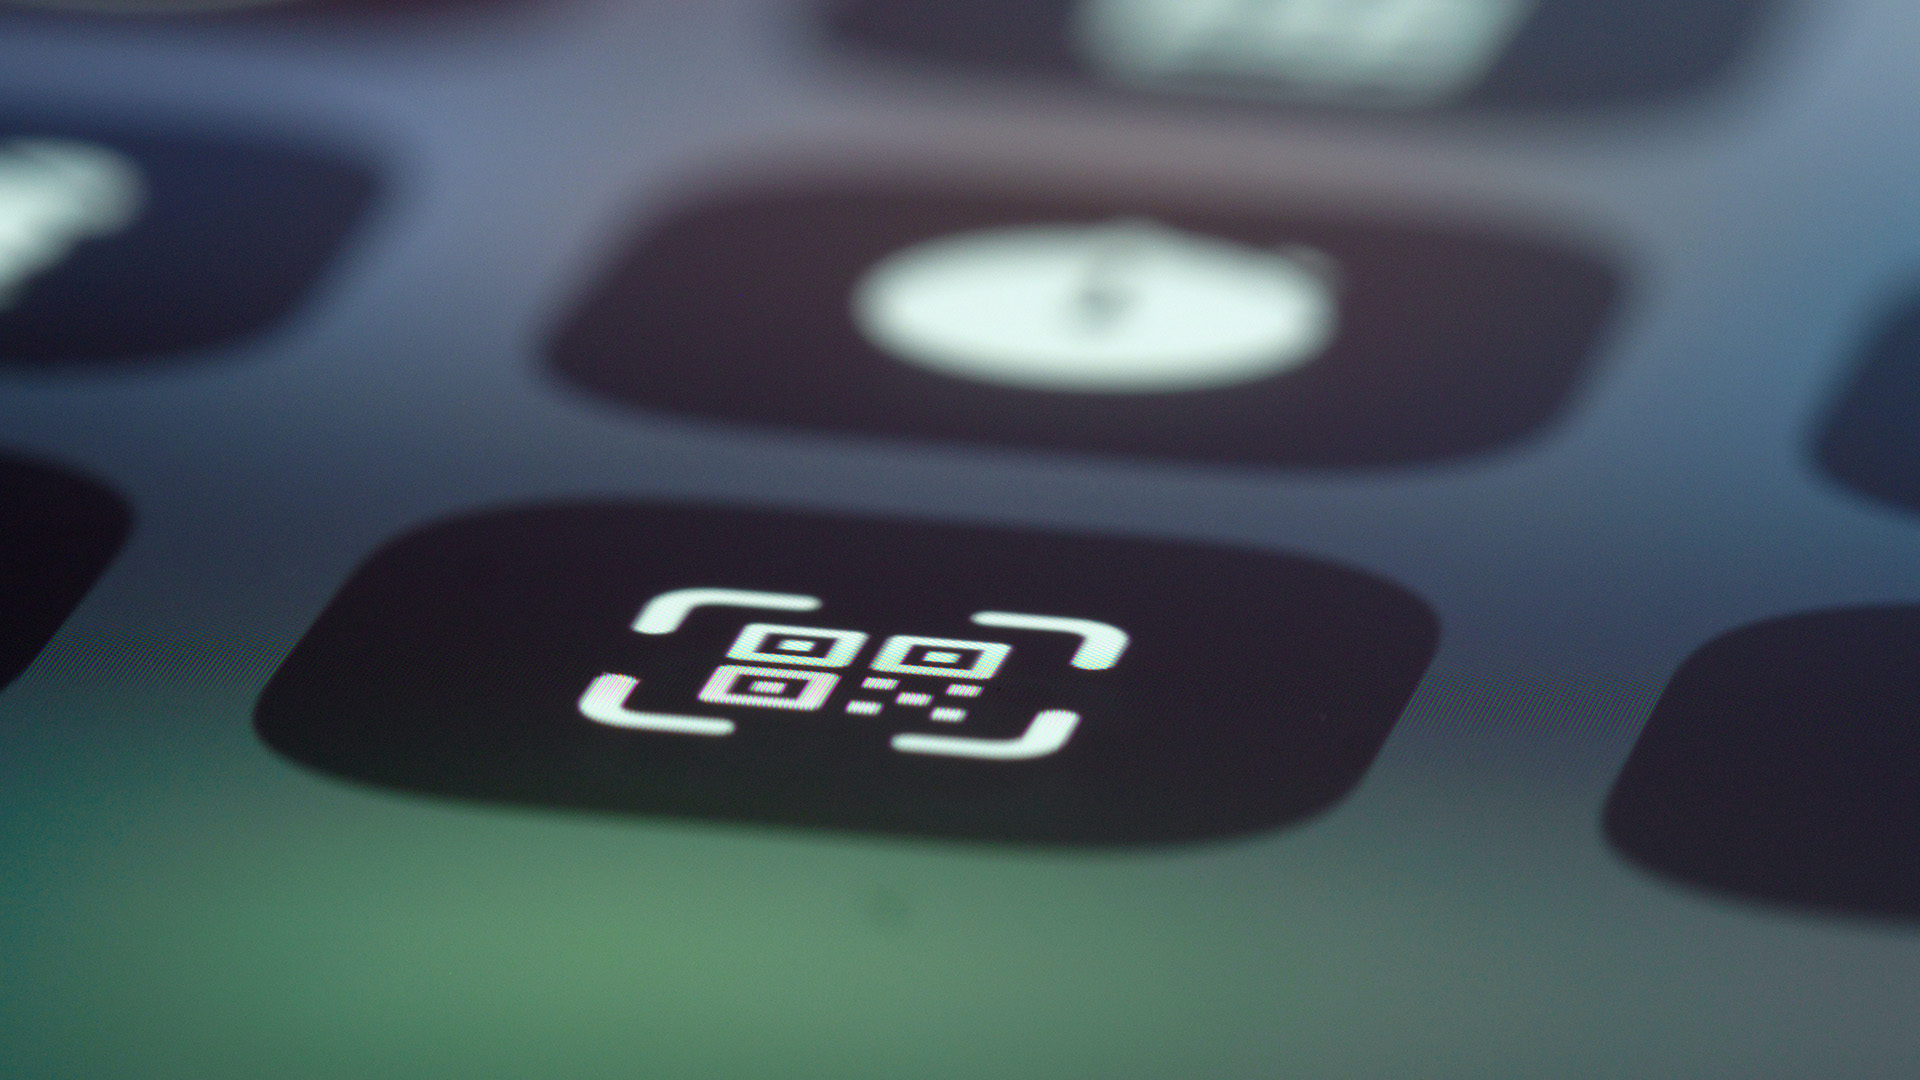 Das Bild zeigt eine Nahaufnahme eines Handys, auf dem ein QR-Code-Icon zu sehen ist. Schon bald soll das E-Rezept für Privatversicherte starten, dann reicht eine App der Krankenkasse und ein QR-Code, um Rezepte digital auszustellen und einzulösen.